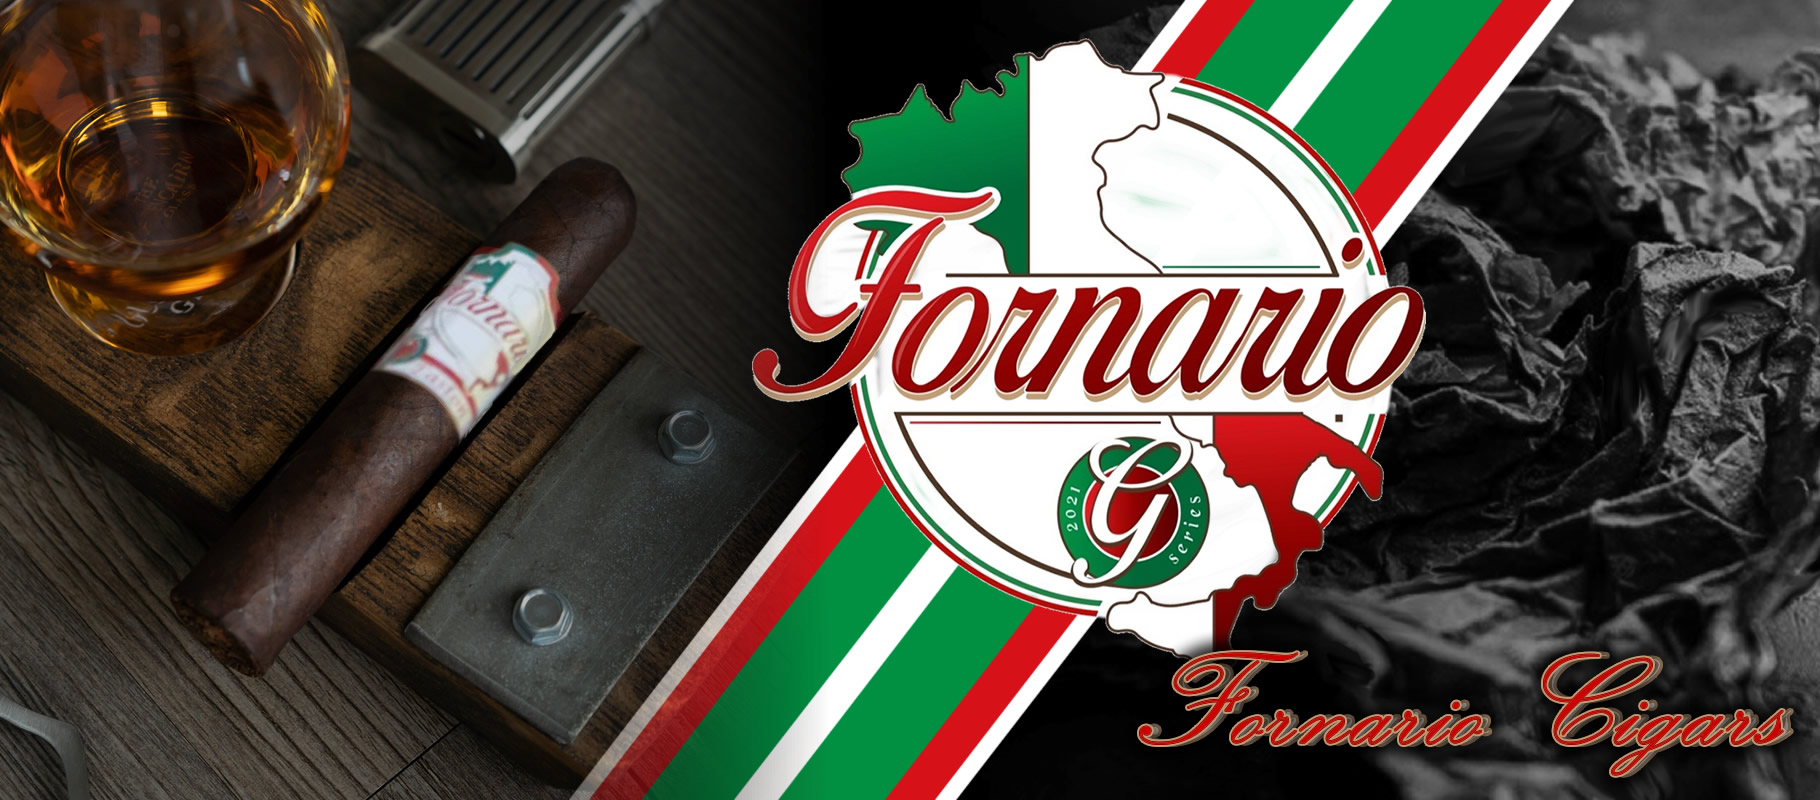 fornario cigars fp